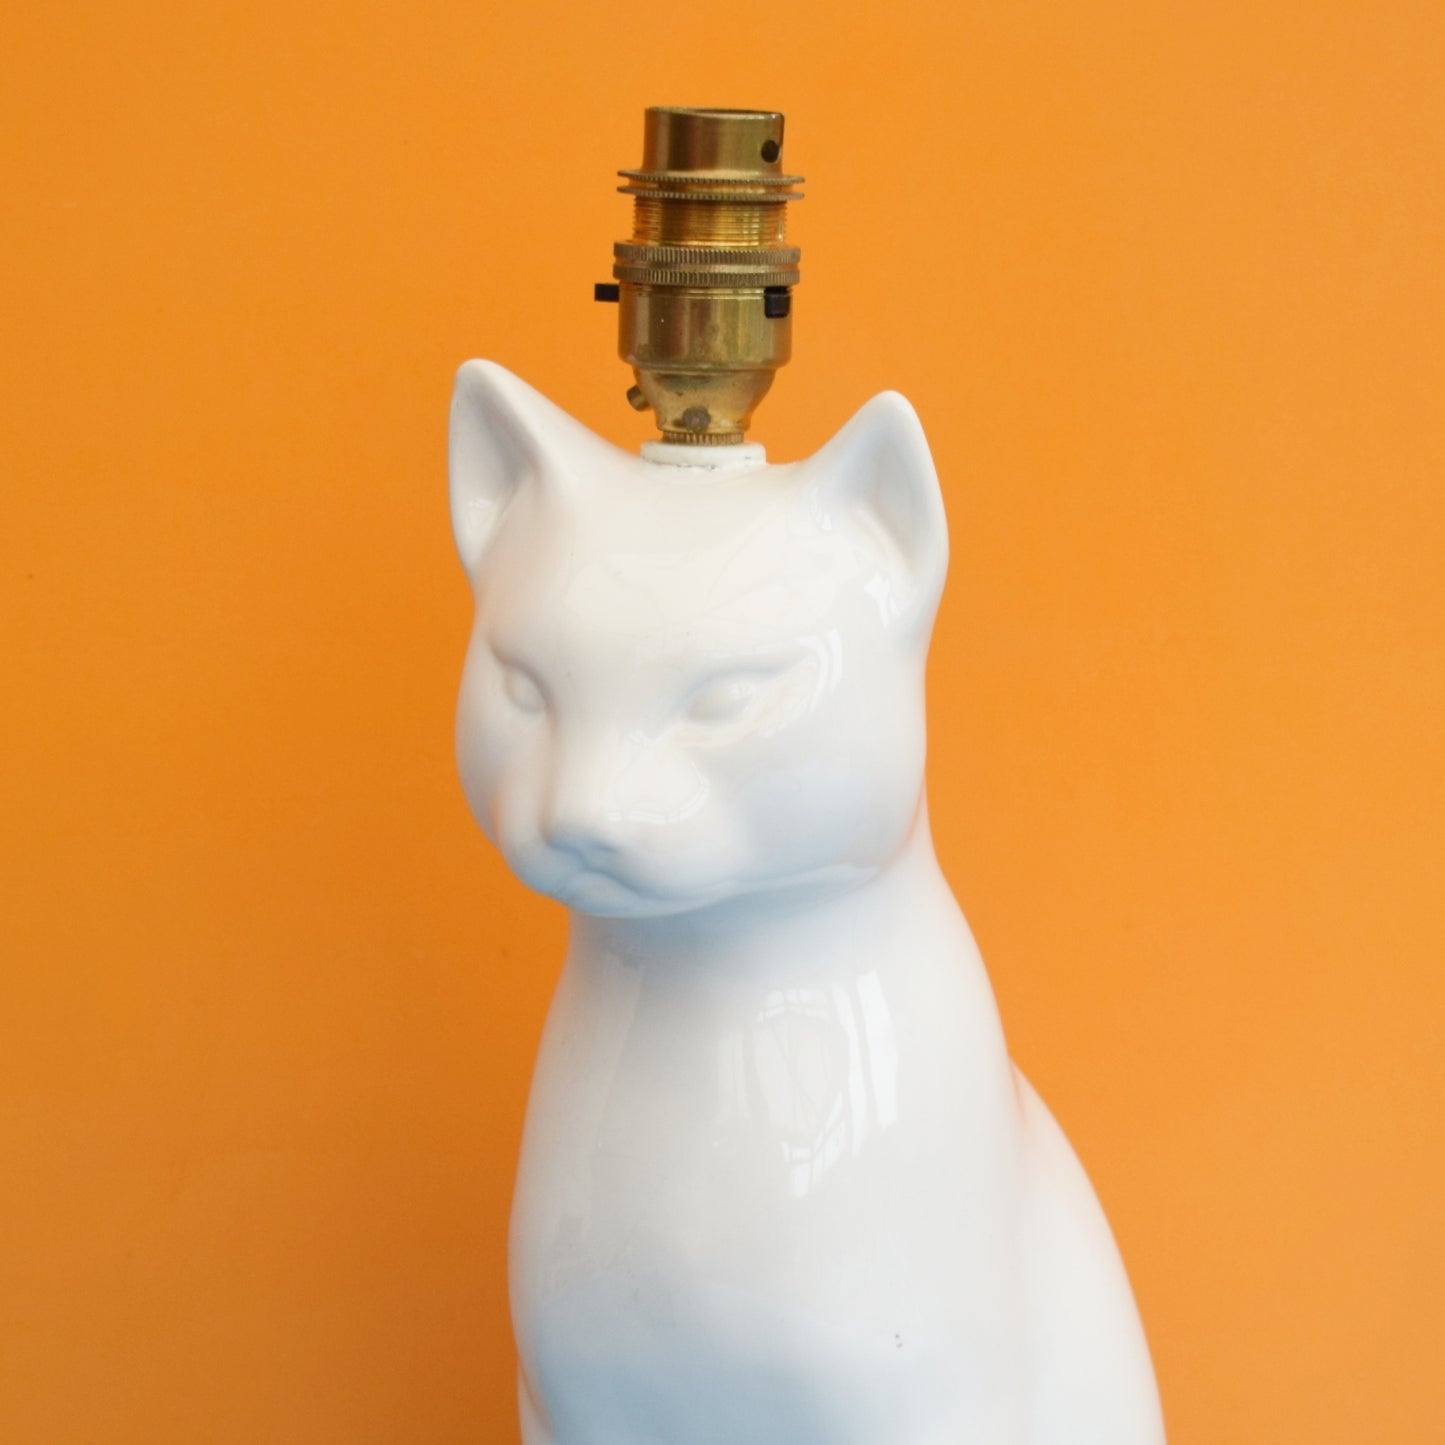 Vintage 1960s Ceramic Cat Lamp - White